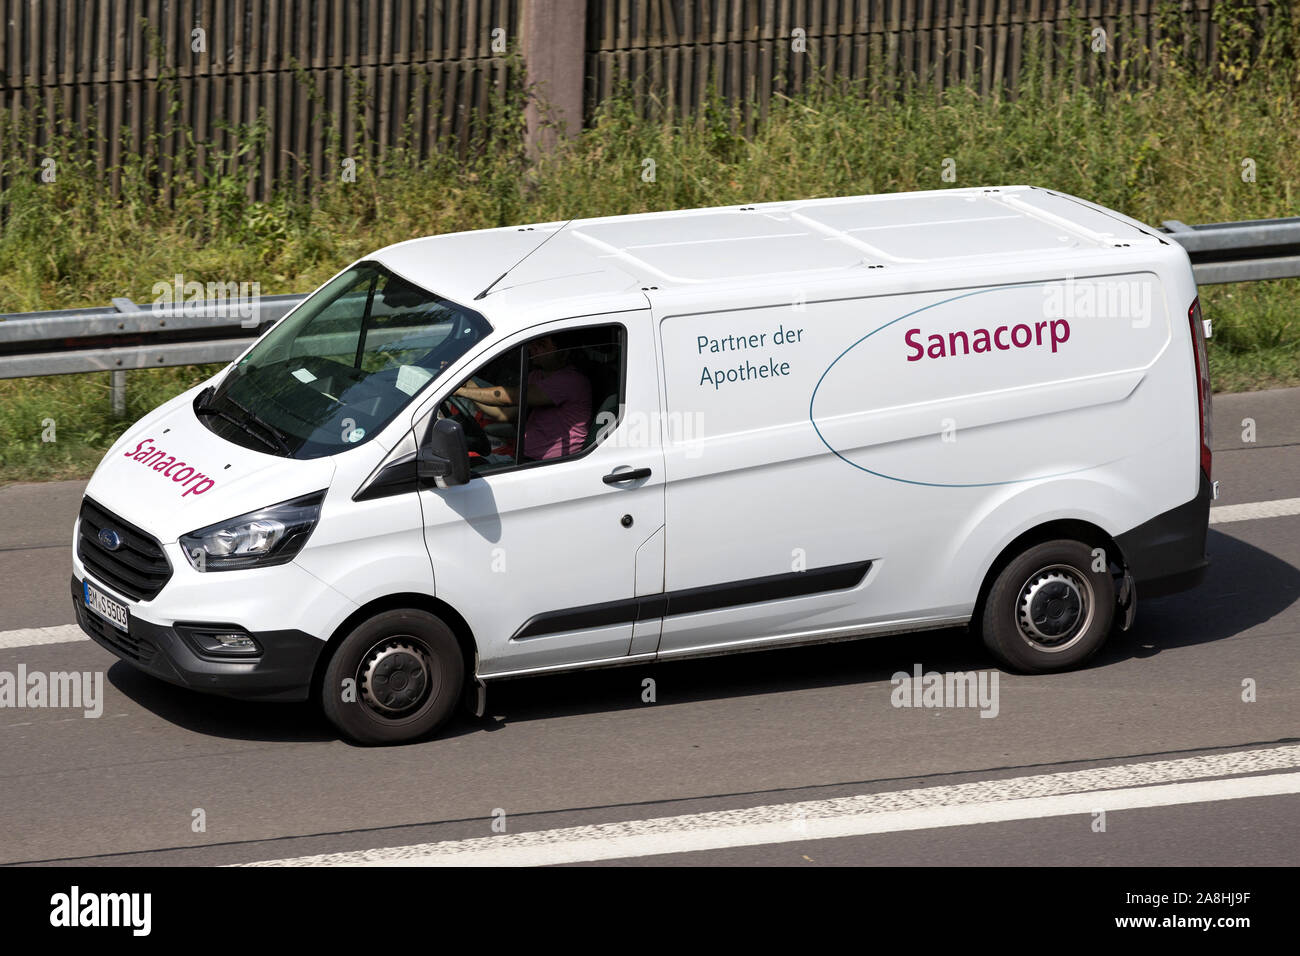 Van Sanacorp sur autoroute. La coopérative Sanacorp pharmacien est un des principaux distributeurs pharmaceutiques en Allemagne. Banque D'Images